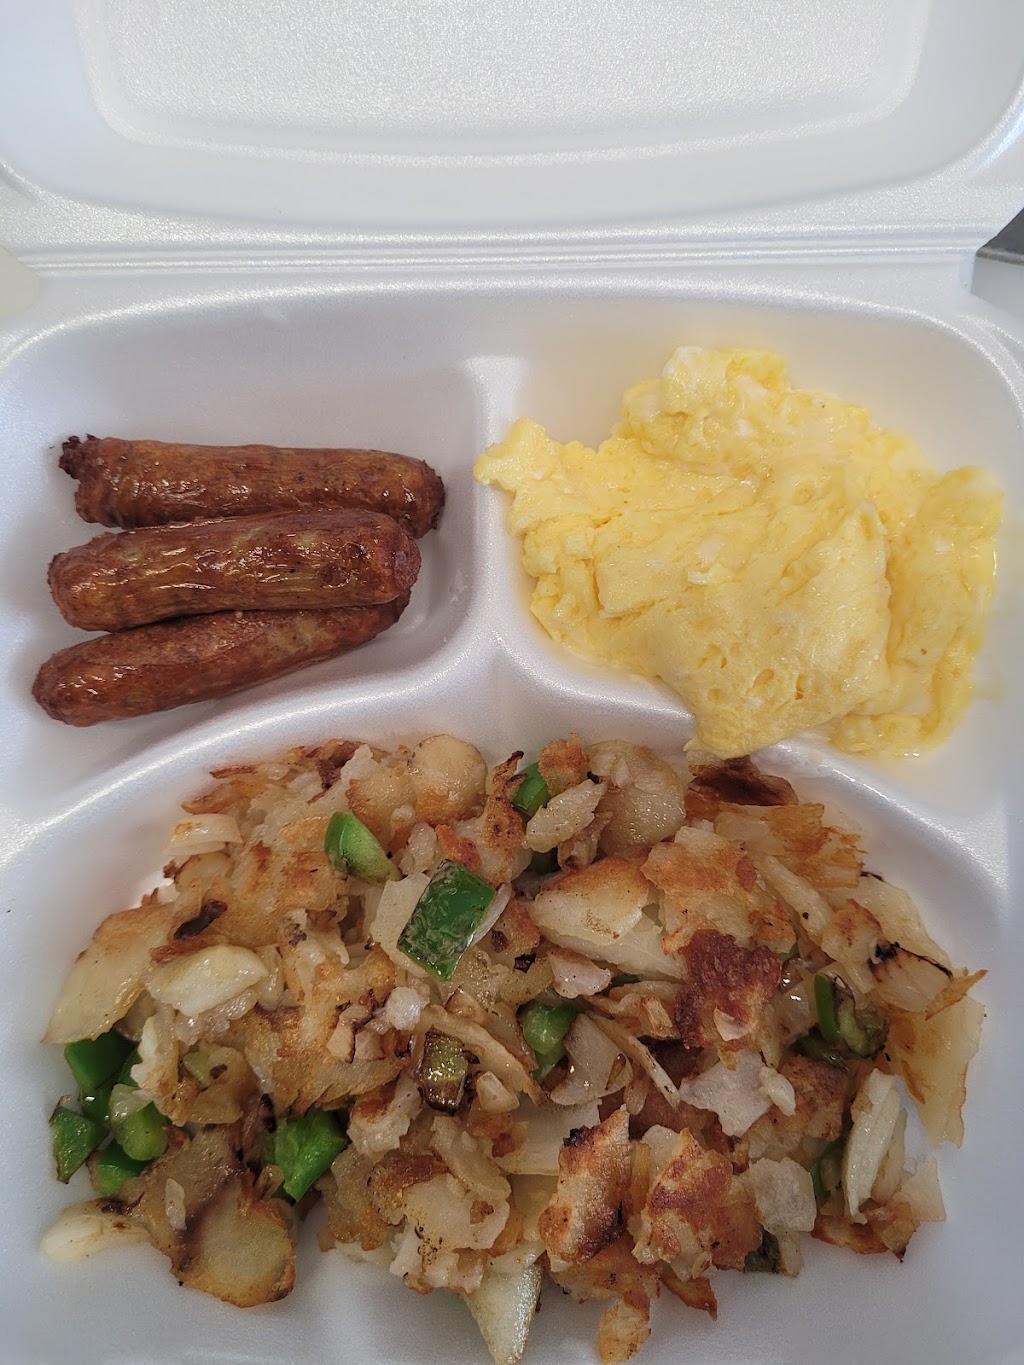 Kingstone Restaurant - Breakfast & Lunch | 2250 N 29th St, Philadelphia, PA 19132 | Phone: (215) 236-9955